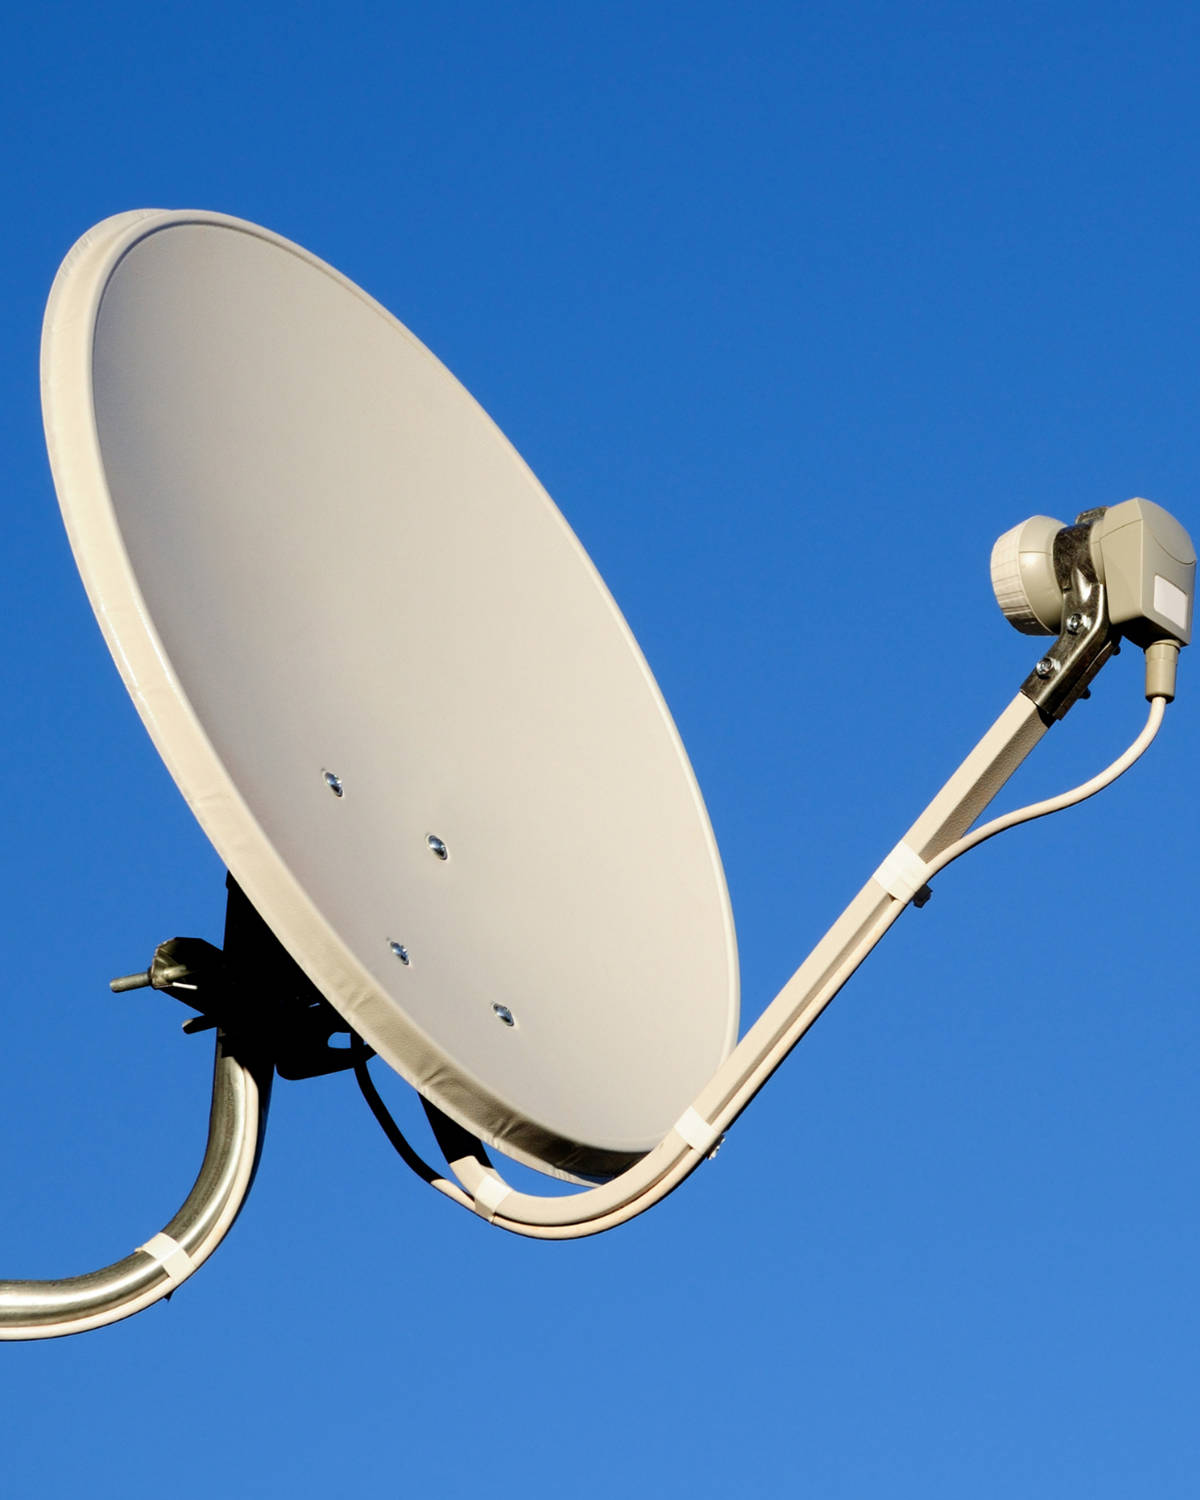 Satellite dish. Тарелка Триколор ТВ цифровое спутниковое Телевидение. Спутниковая тарелка антенна Триколор ТВ. Параболическая антенна.